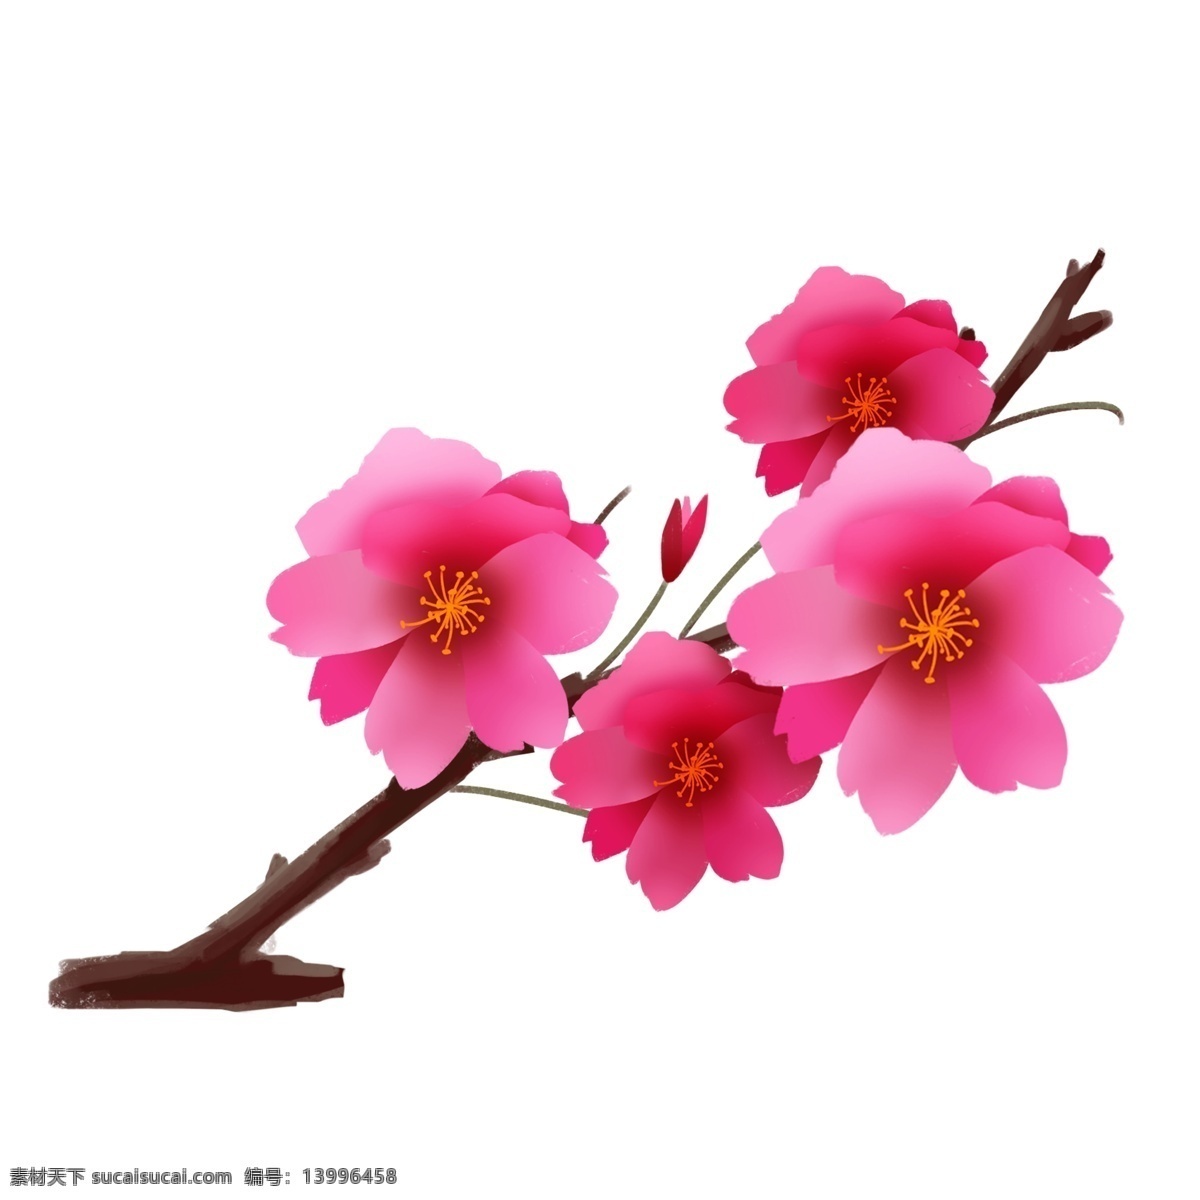 春季 樱花 装饰 插画 春季樱花 粉色的樱花 漂亮的樱花 创意樱花 粉色的花瓣 立春樱花 樱花插画